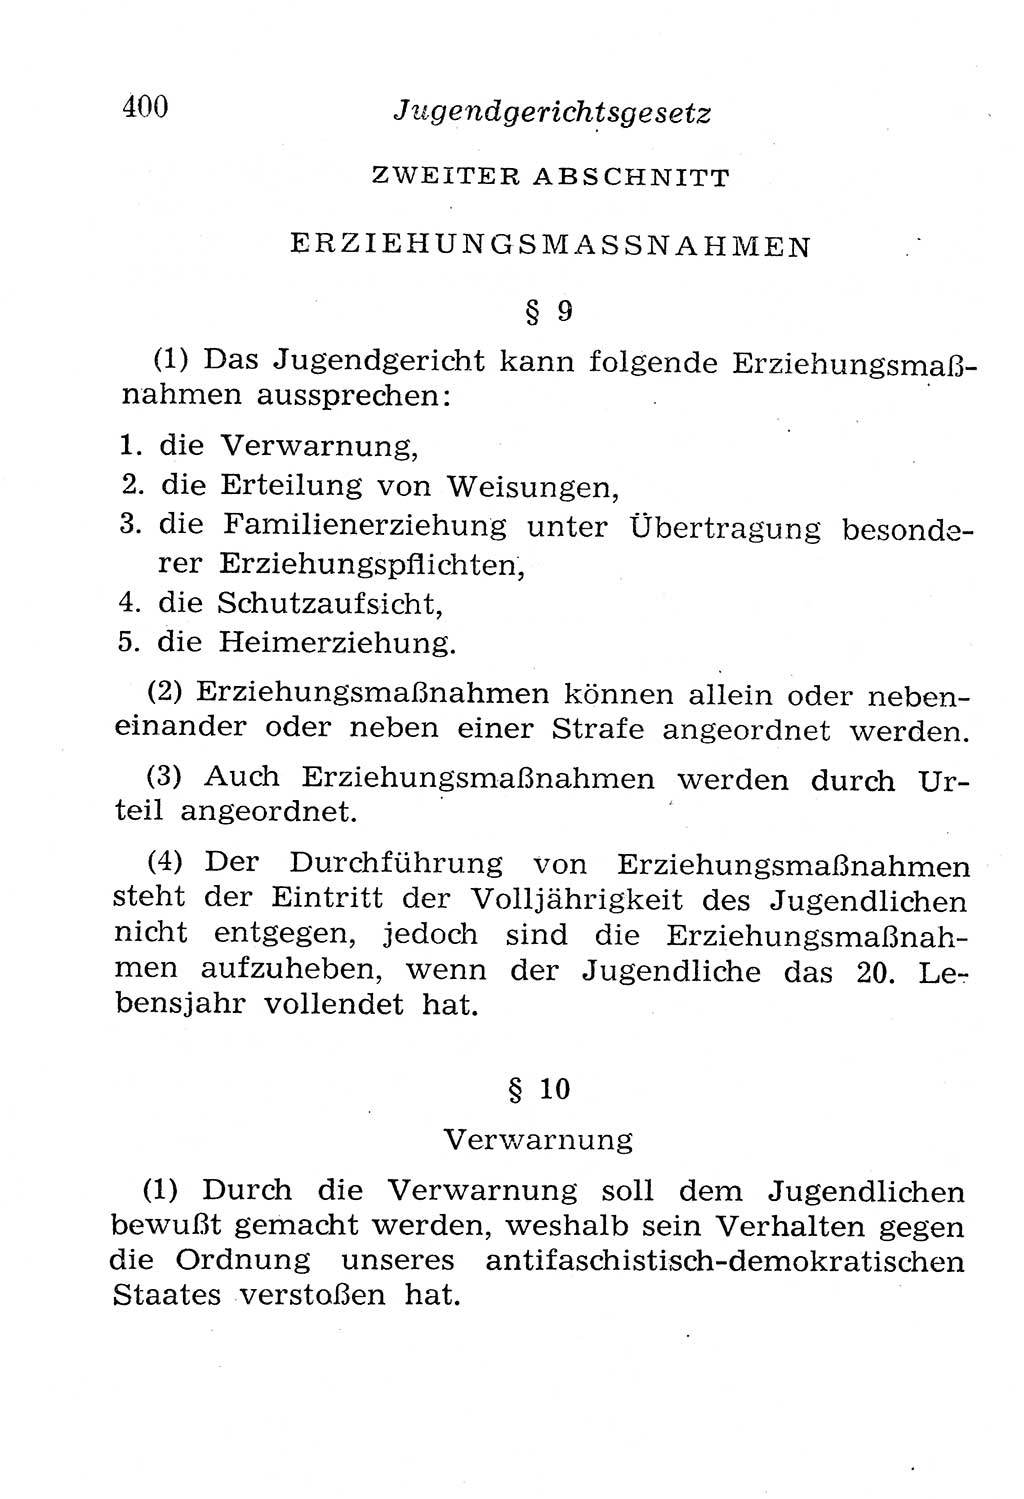 Strafgesetzbuch (StGB) und andere Strafgesetze [Deutsche Demokratische Republik (DDR)] 1958, Seite 400 (StGB Strafges. DDR 1958, S. 400)